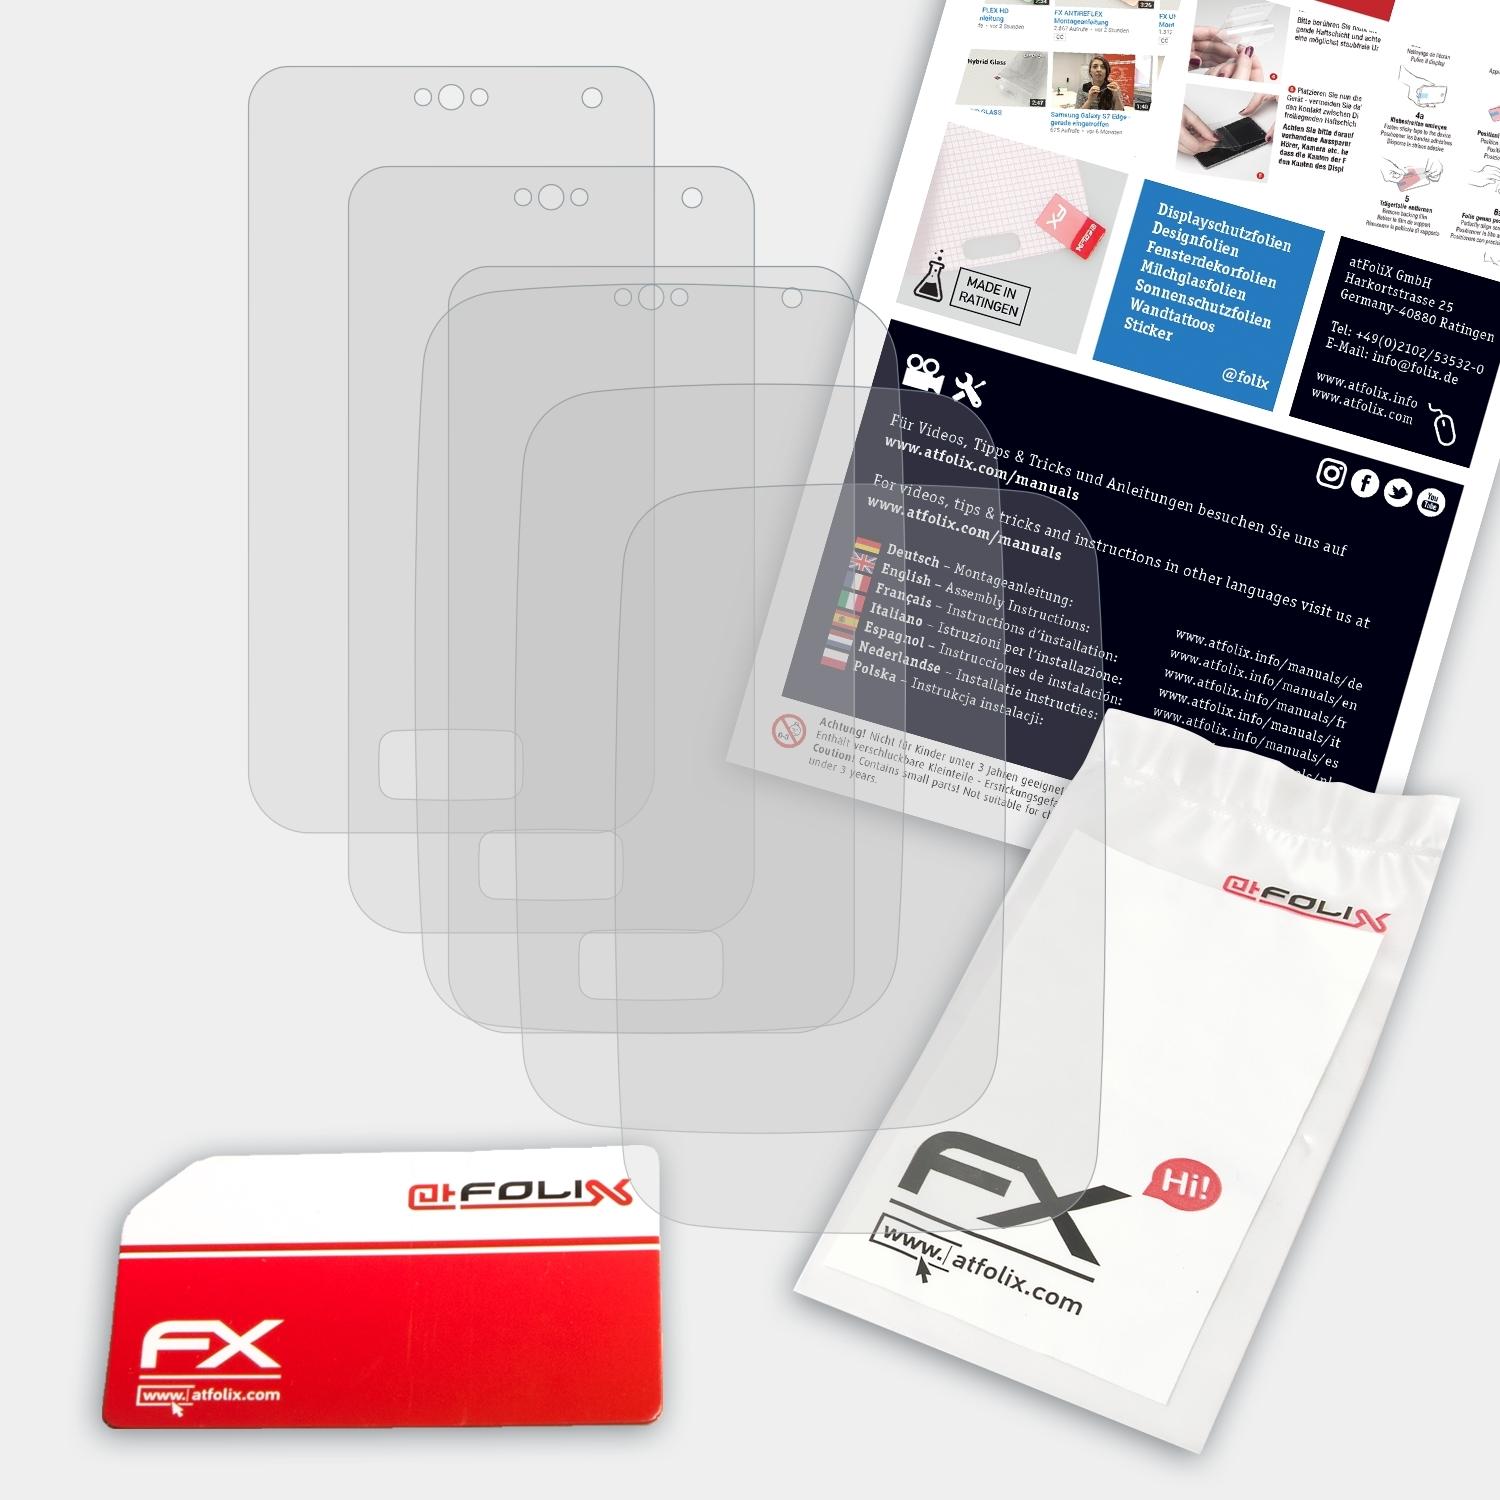 3x KX-PRX120) ATFOLIX FX-Antireflex Panasonic Displayschutz(für